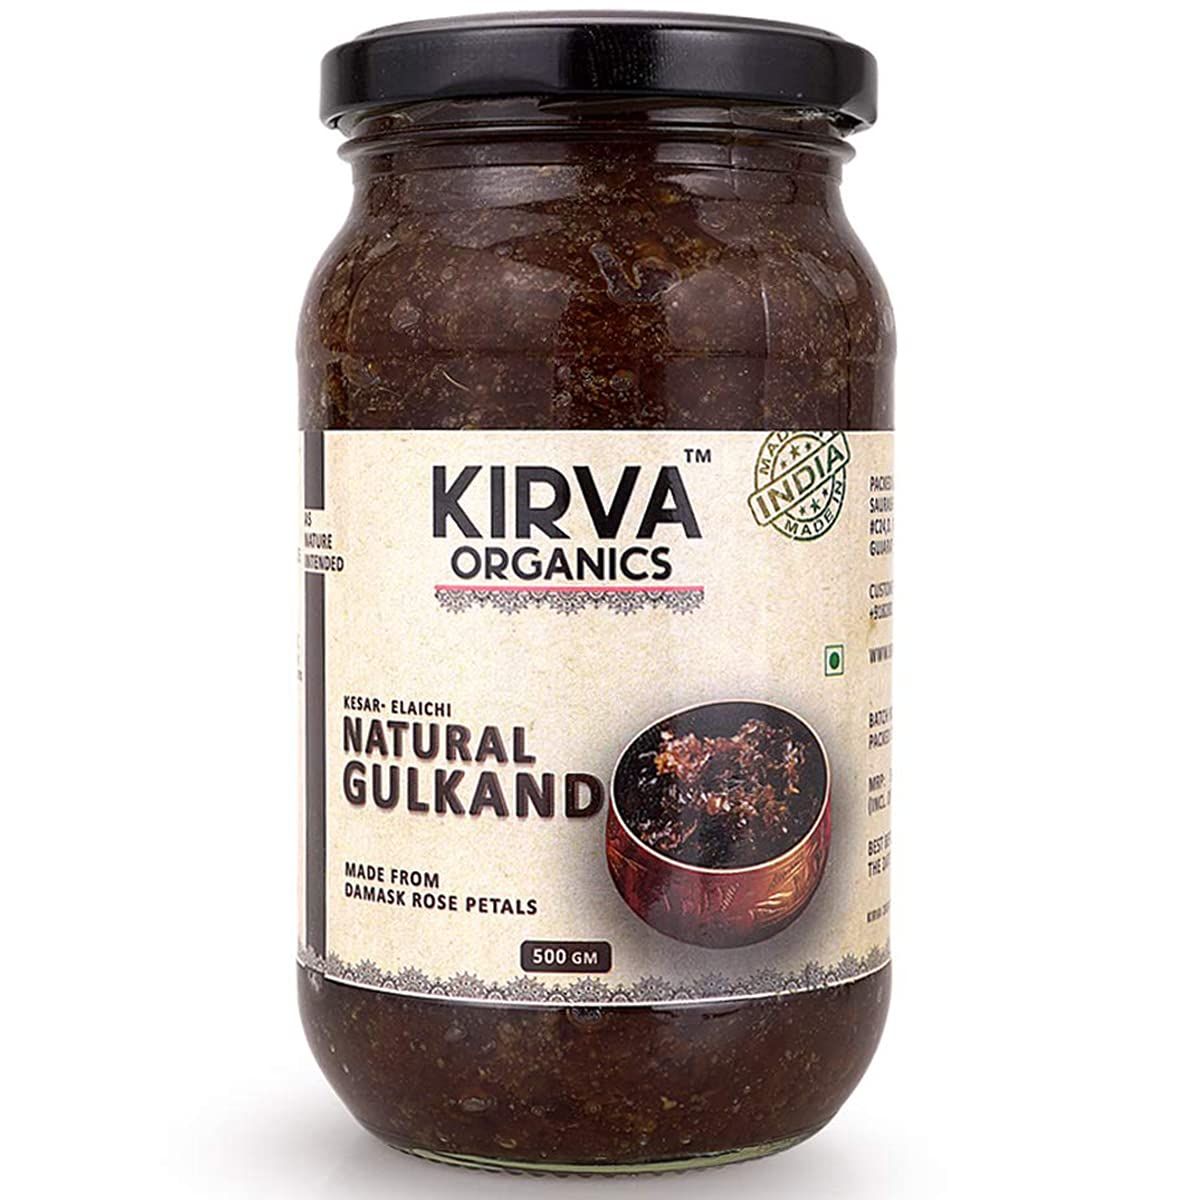 Kirva Organics Natural Gulkand Image